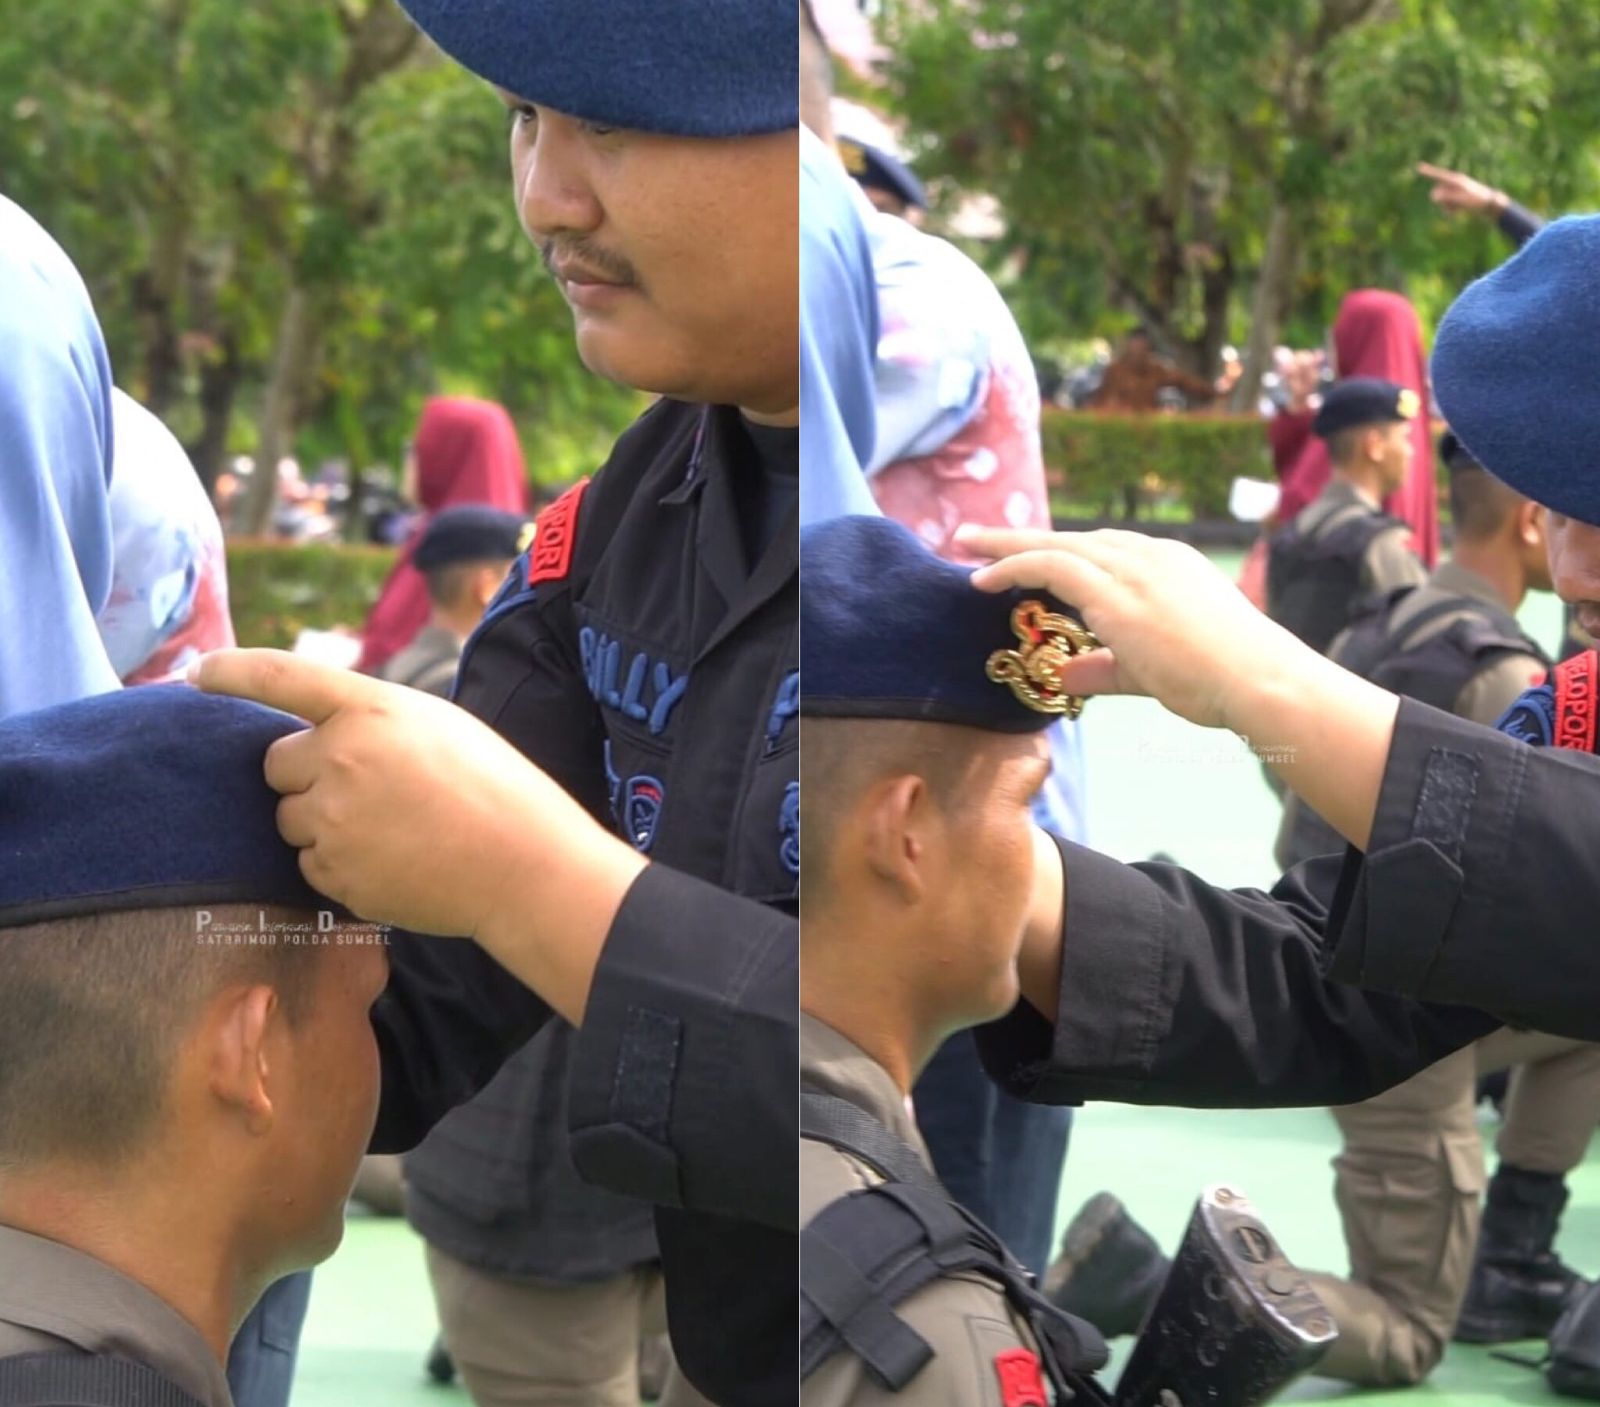 Tradisi Pembaretan Bintara Brimob Polda Sumatera Selatan, Kakak Sematkan Baret Biru ke Adik Kandung